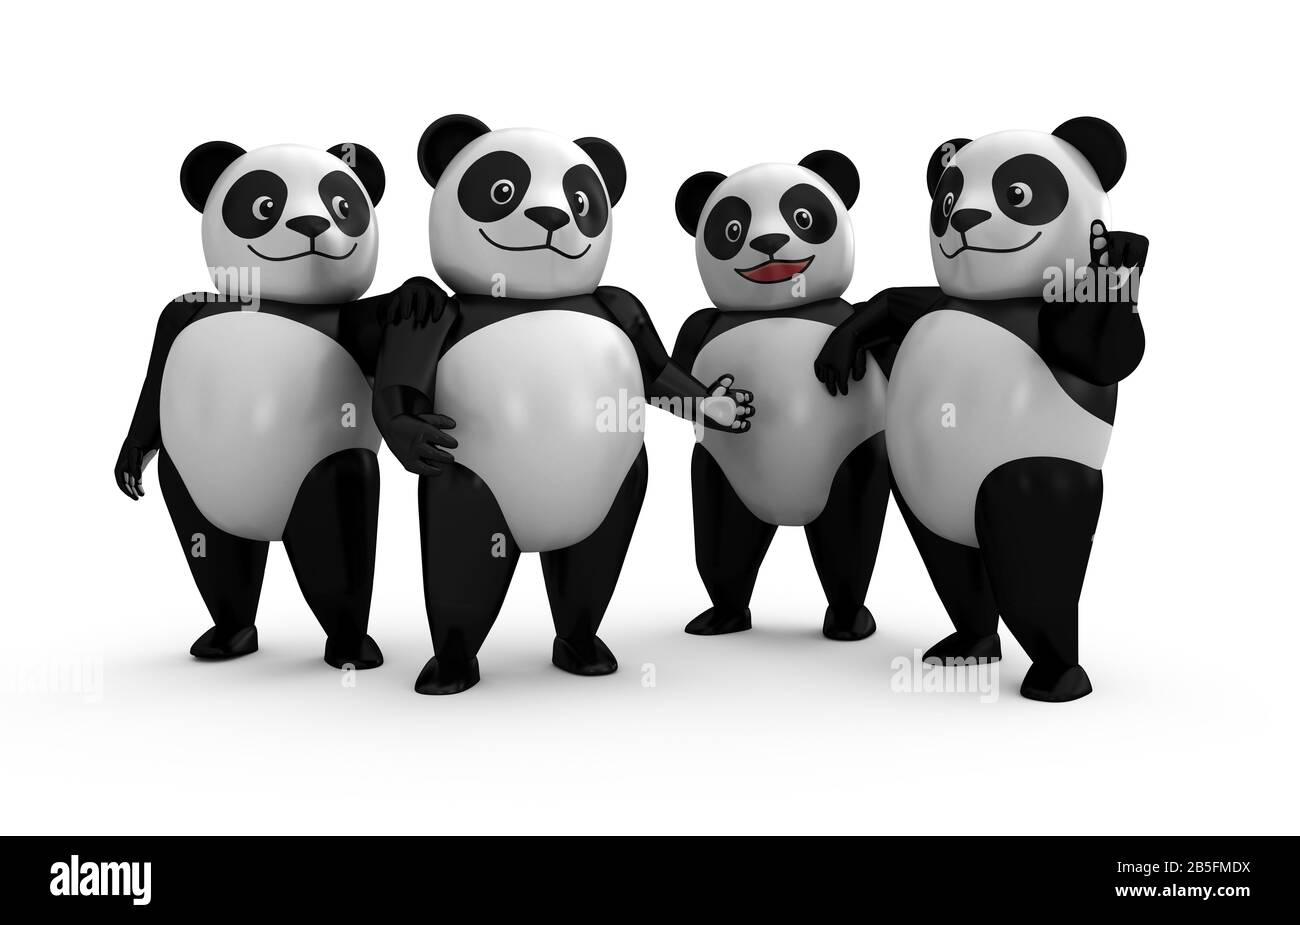 3d Panda Plastic Toy (Toy Art) Stile In Più Pose (Gruppo). Illustrazione Del Disegno Del Personaggio Di Cartoon 3d. Foto Stock